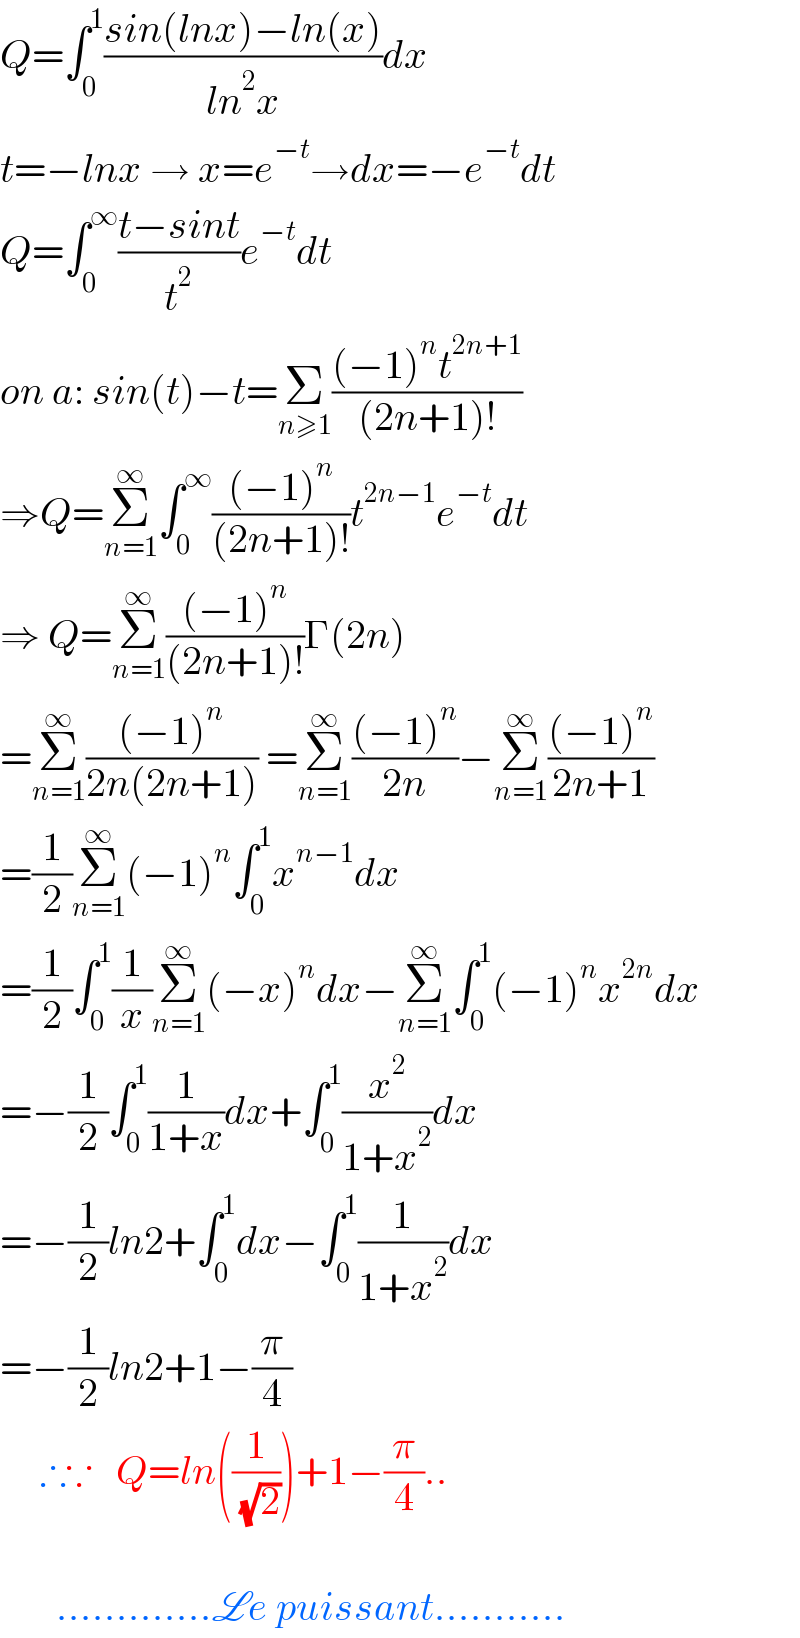 Q=∫_0 ^1 ((sin(lnx)−ln(x))/(ln^2 x))dx  t=−lnx → x=e^(−t) →dx=−e^(−t) dt  Q=∫_0 ^∞ ((t−sint)/t^2 )e^(−t) dt  on a: sin(t)−t=Σ_(n≥1) (((−1)^n t^(2n+1) )/((2n+1)!))  ⇒Q=Σ_(n=1) ^∞ ∫_0 ^∞ (((−1)^n )/((2n+1)!))t^(2n−1) e^(−t) dt  ⇒ Q=Σ_(n=1) ^∞ (((−1)^n )/((2n+1)!))Γ(2n)  =Σ_(n=1) ^∞ (((−1)^n )/(2n(2n+1))) =Σ_(n=1) ^∞ (((−1)^n )/(2n))−Σ_(n=1) ^∞ (((−1)^n )/(2n+1))  =(1/2)Σ_(n=1) ^∞ (−1)^n ∫_0 ^1 x^(n−1) dx  =(1/2)∫_0 ^1 (1/x)Σ_(n=1) ^∞ (−x)^n dx−Σ_(n=1) ^∞ ∫_0 ^1 (−1)^n x^(2n) dx  =−(1/2)∫_0 ^1 (1/(1+x))dx+∫_0 ^1 (x^2 /(1+x^2 ))dx  =−(1/2)ln2+∫_0 ^1 dx−∫_0 ^1 (1/(1+x^2 ))dx  =−(1/2)ln2+1−(π/4)       ∴∵   Q=ln((1/( (√2))))+1−(π/4)..           .............Le puissant...........  